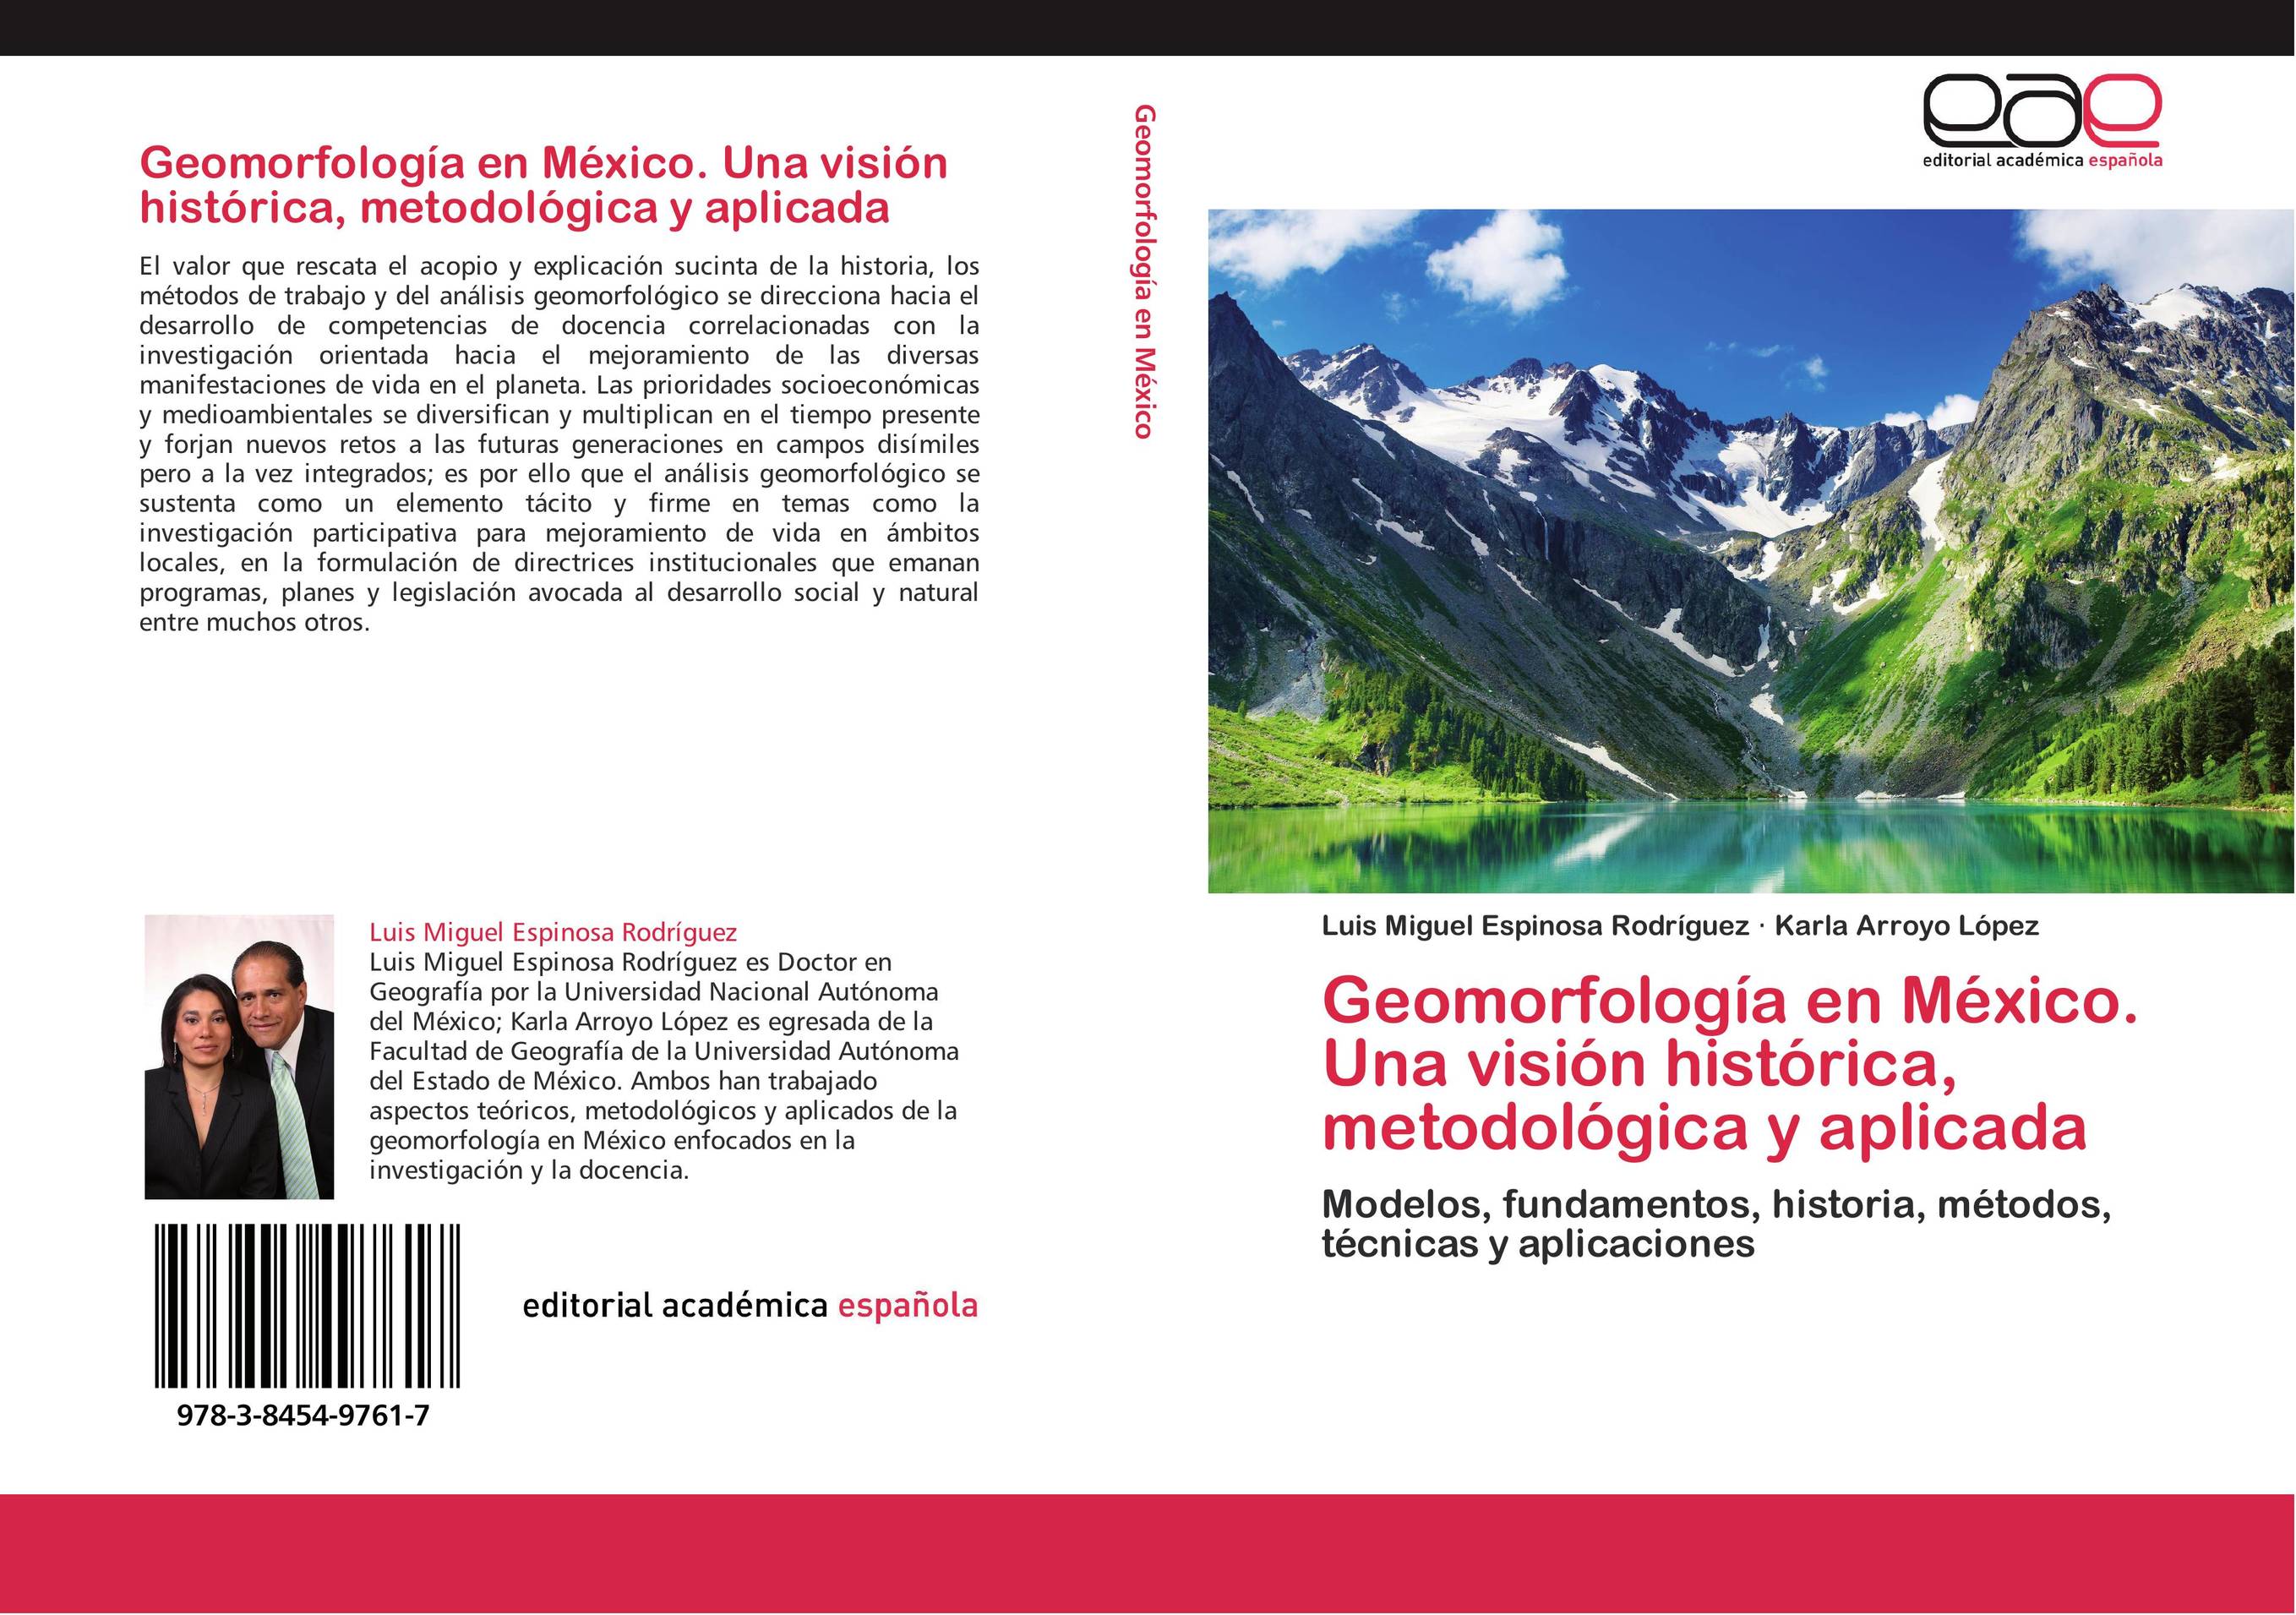 Geomorfología en México. Una visión histórica, metodológica y aplicada